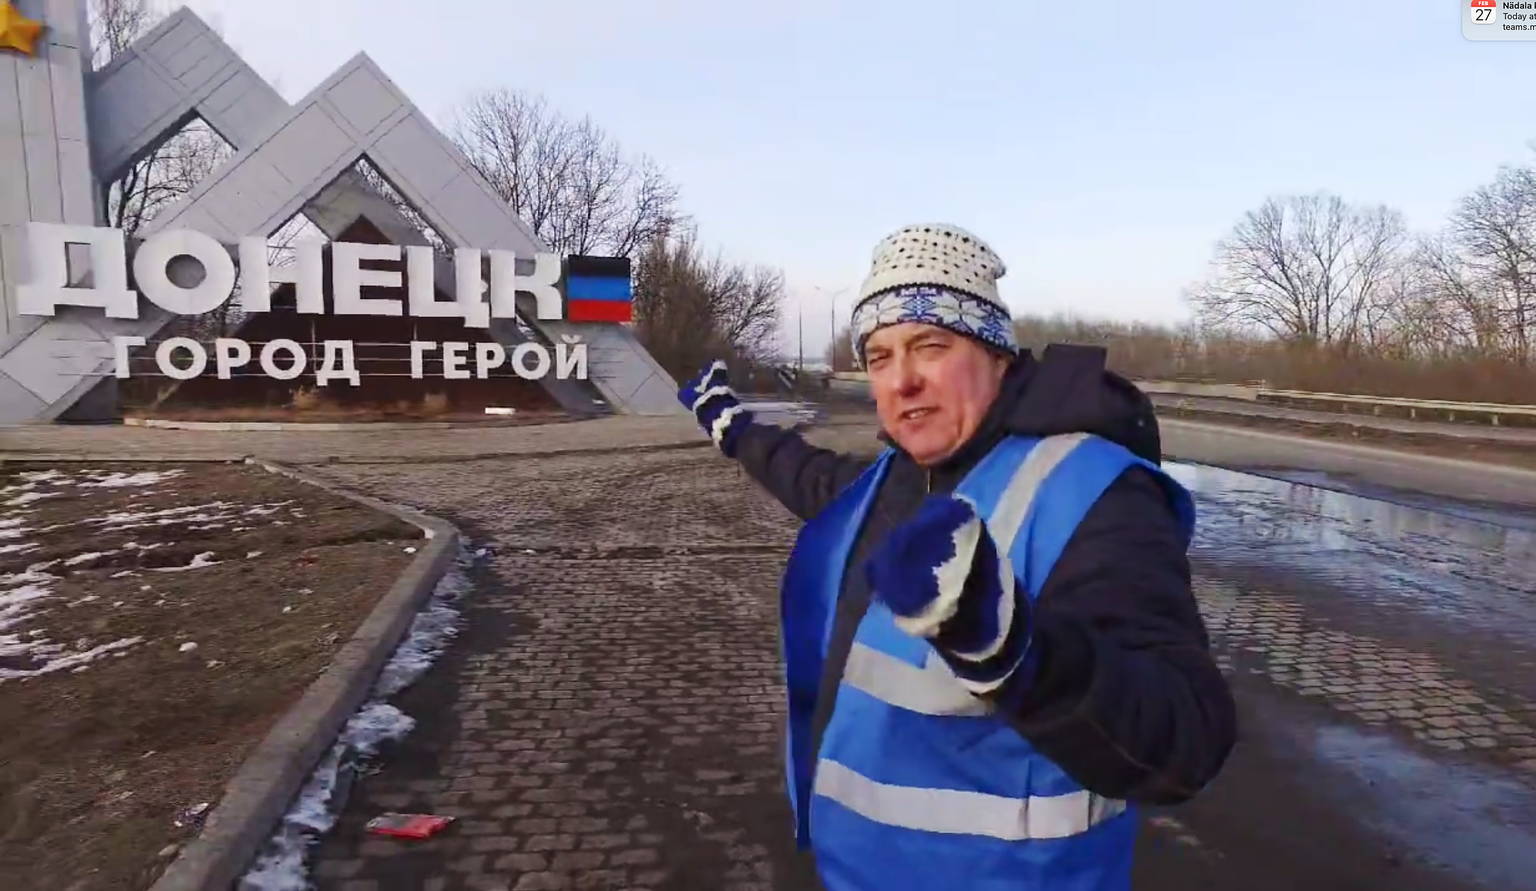 Eestimaa Ühendatud Vasakpartei nimekirjas parlamenti kandideerinud Aivo Peterson Ukrainas Vene okupantide kontrolli all olevas Donetskis.